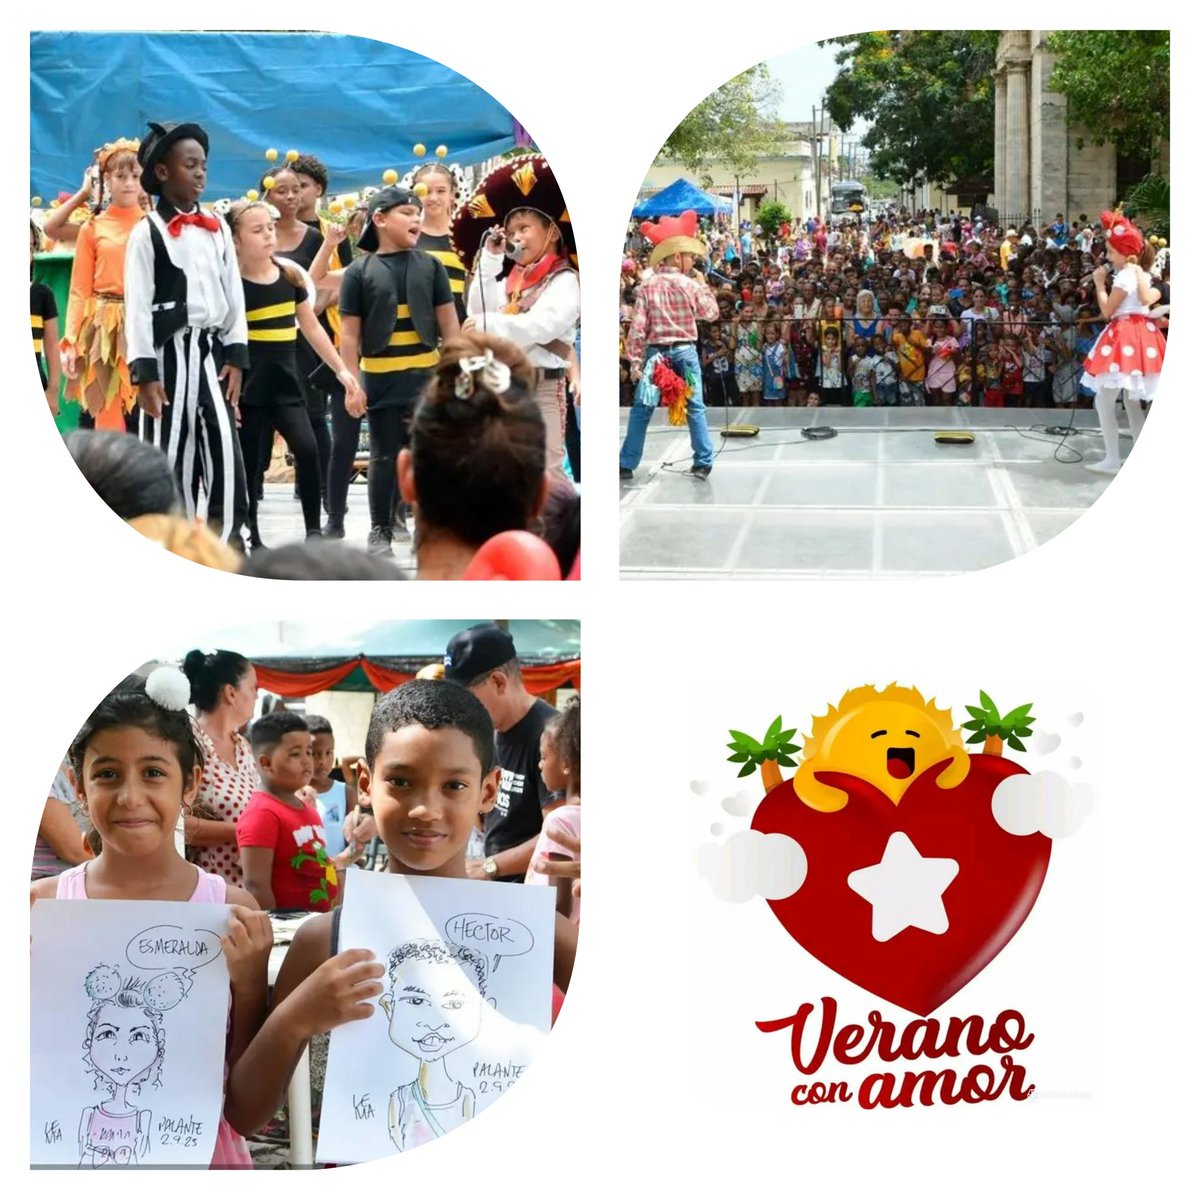 Llega a su fin el #VeranoConAmor2023 , con una gran fiesta por toda #Cuba 🇨🇺
Listos los estudiantes para un  #NuevoCursoEscolar 
#CubaEduca 
#AgroalimPorCuba 🇨🇺